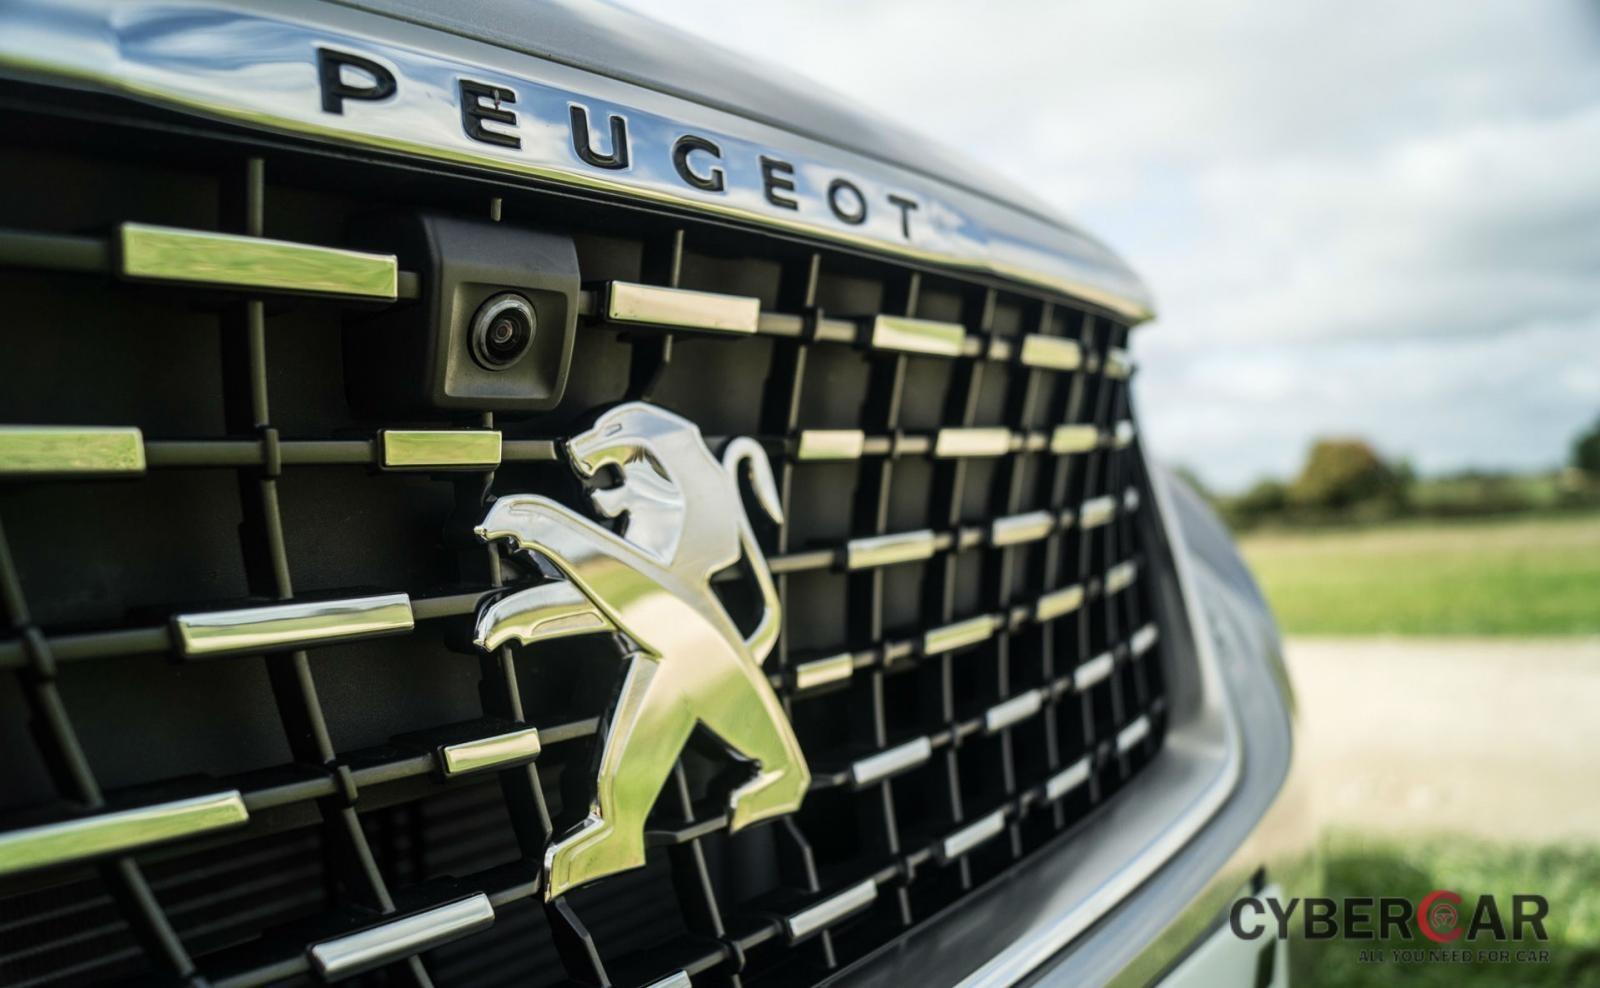 Tổng thể đầu xe của Peugeot 5008 tạo cảm giác khỏe khoắn, nam tính